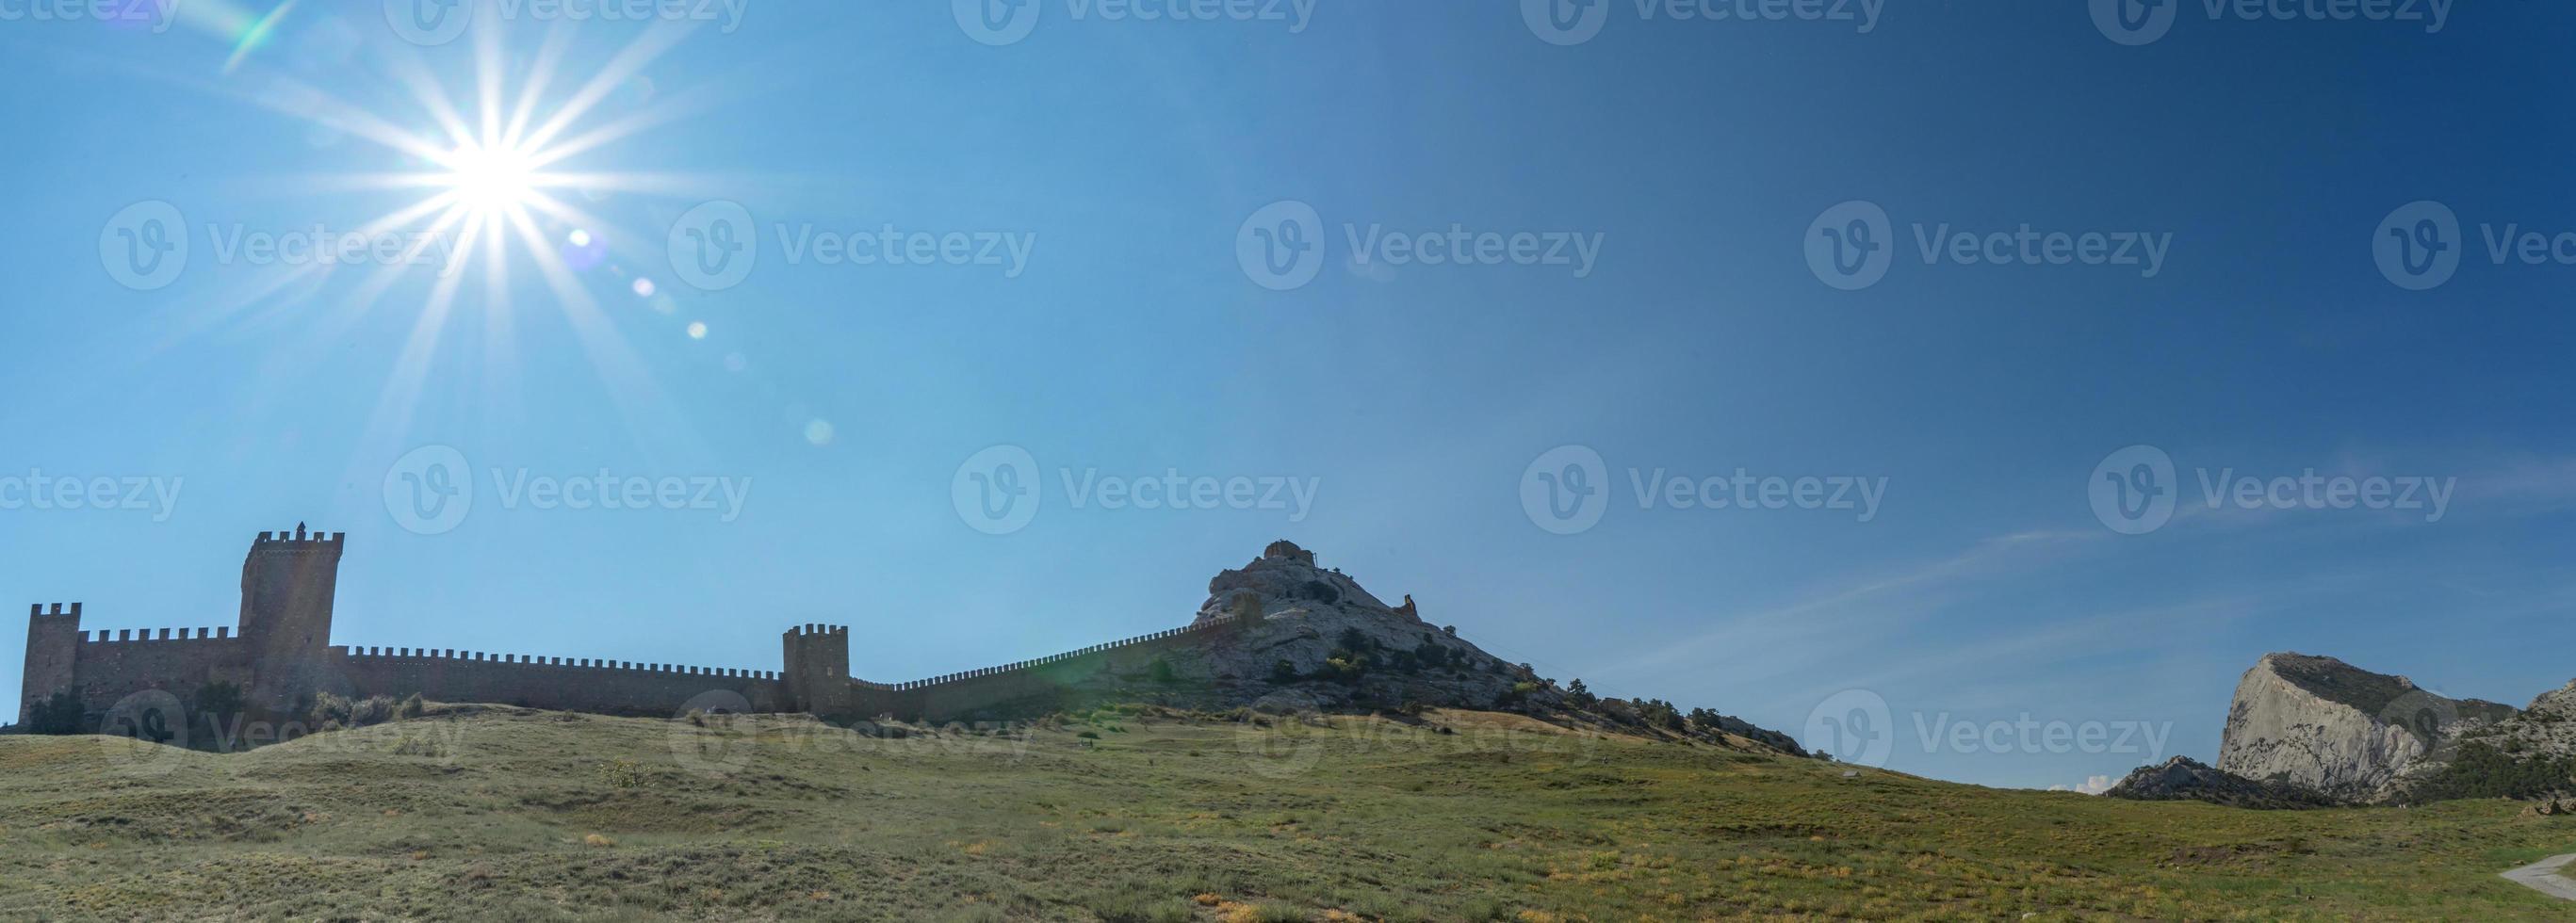 genös fästning i Sudak, Republiken Krim, Ryssland. foto